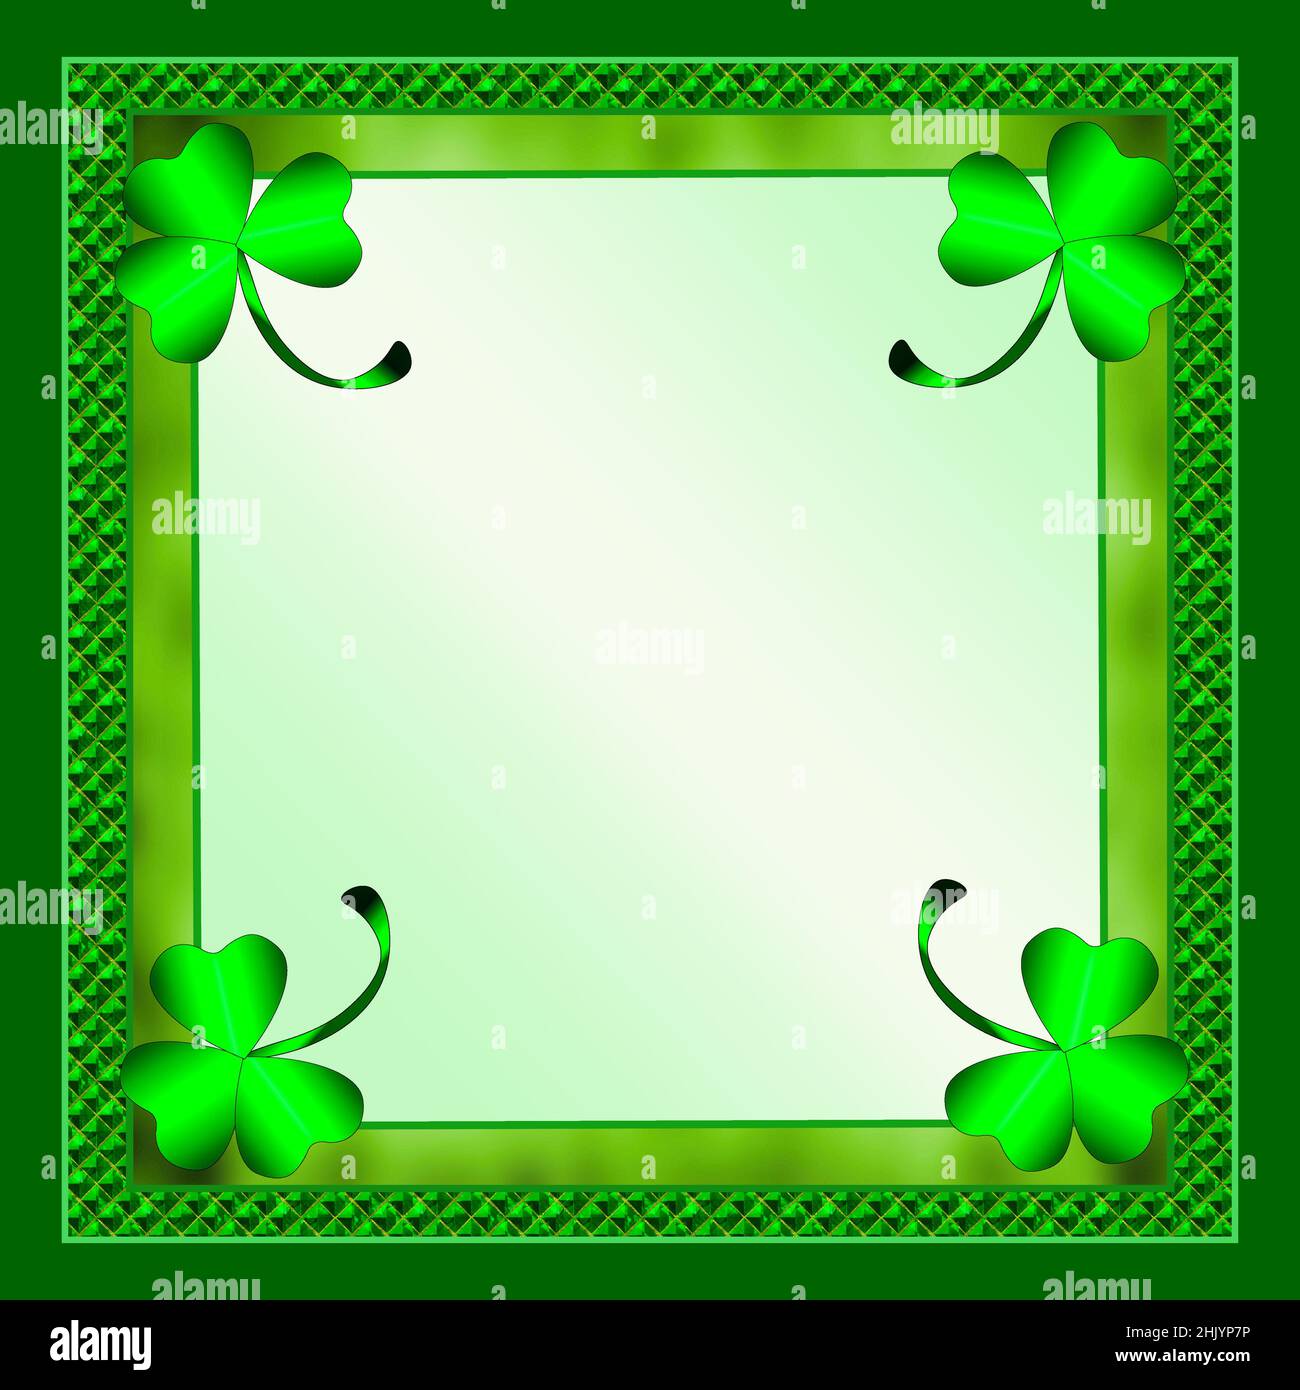 Fond de la place du jour de Saint-Patrick avec grands Shamrock lumineux et bordures à motifs vert Fancy. Banque D'Images